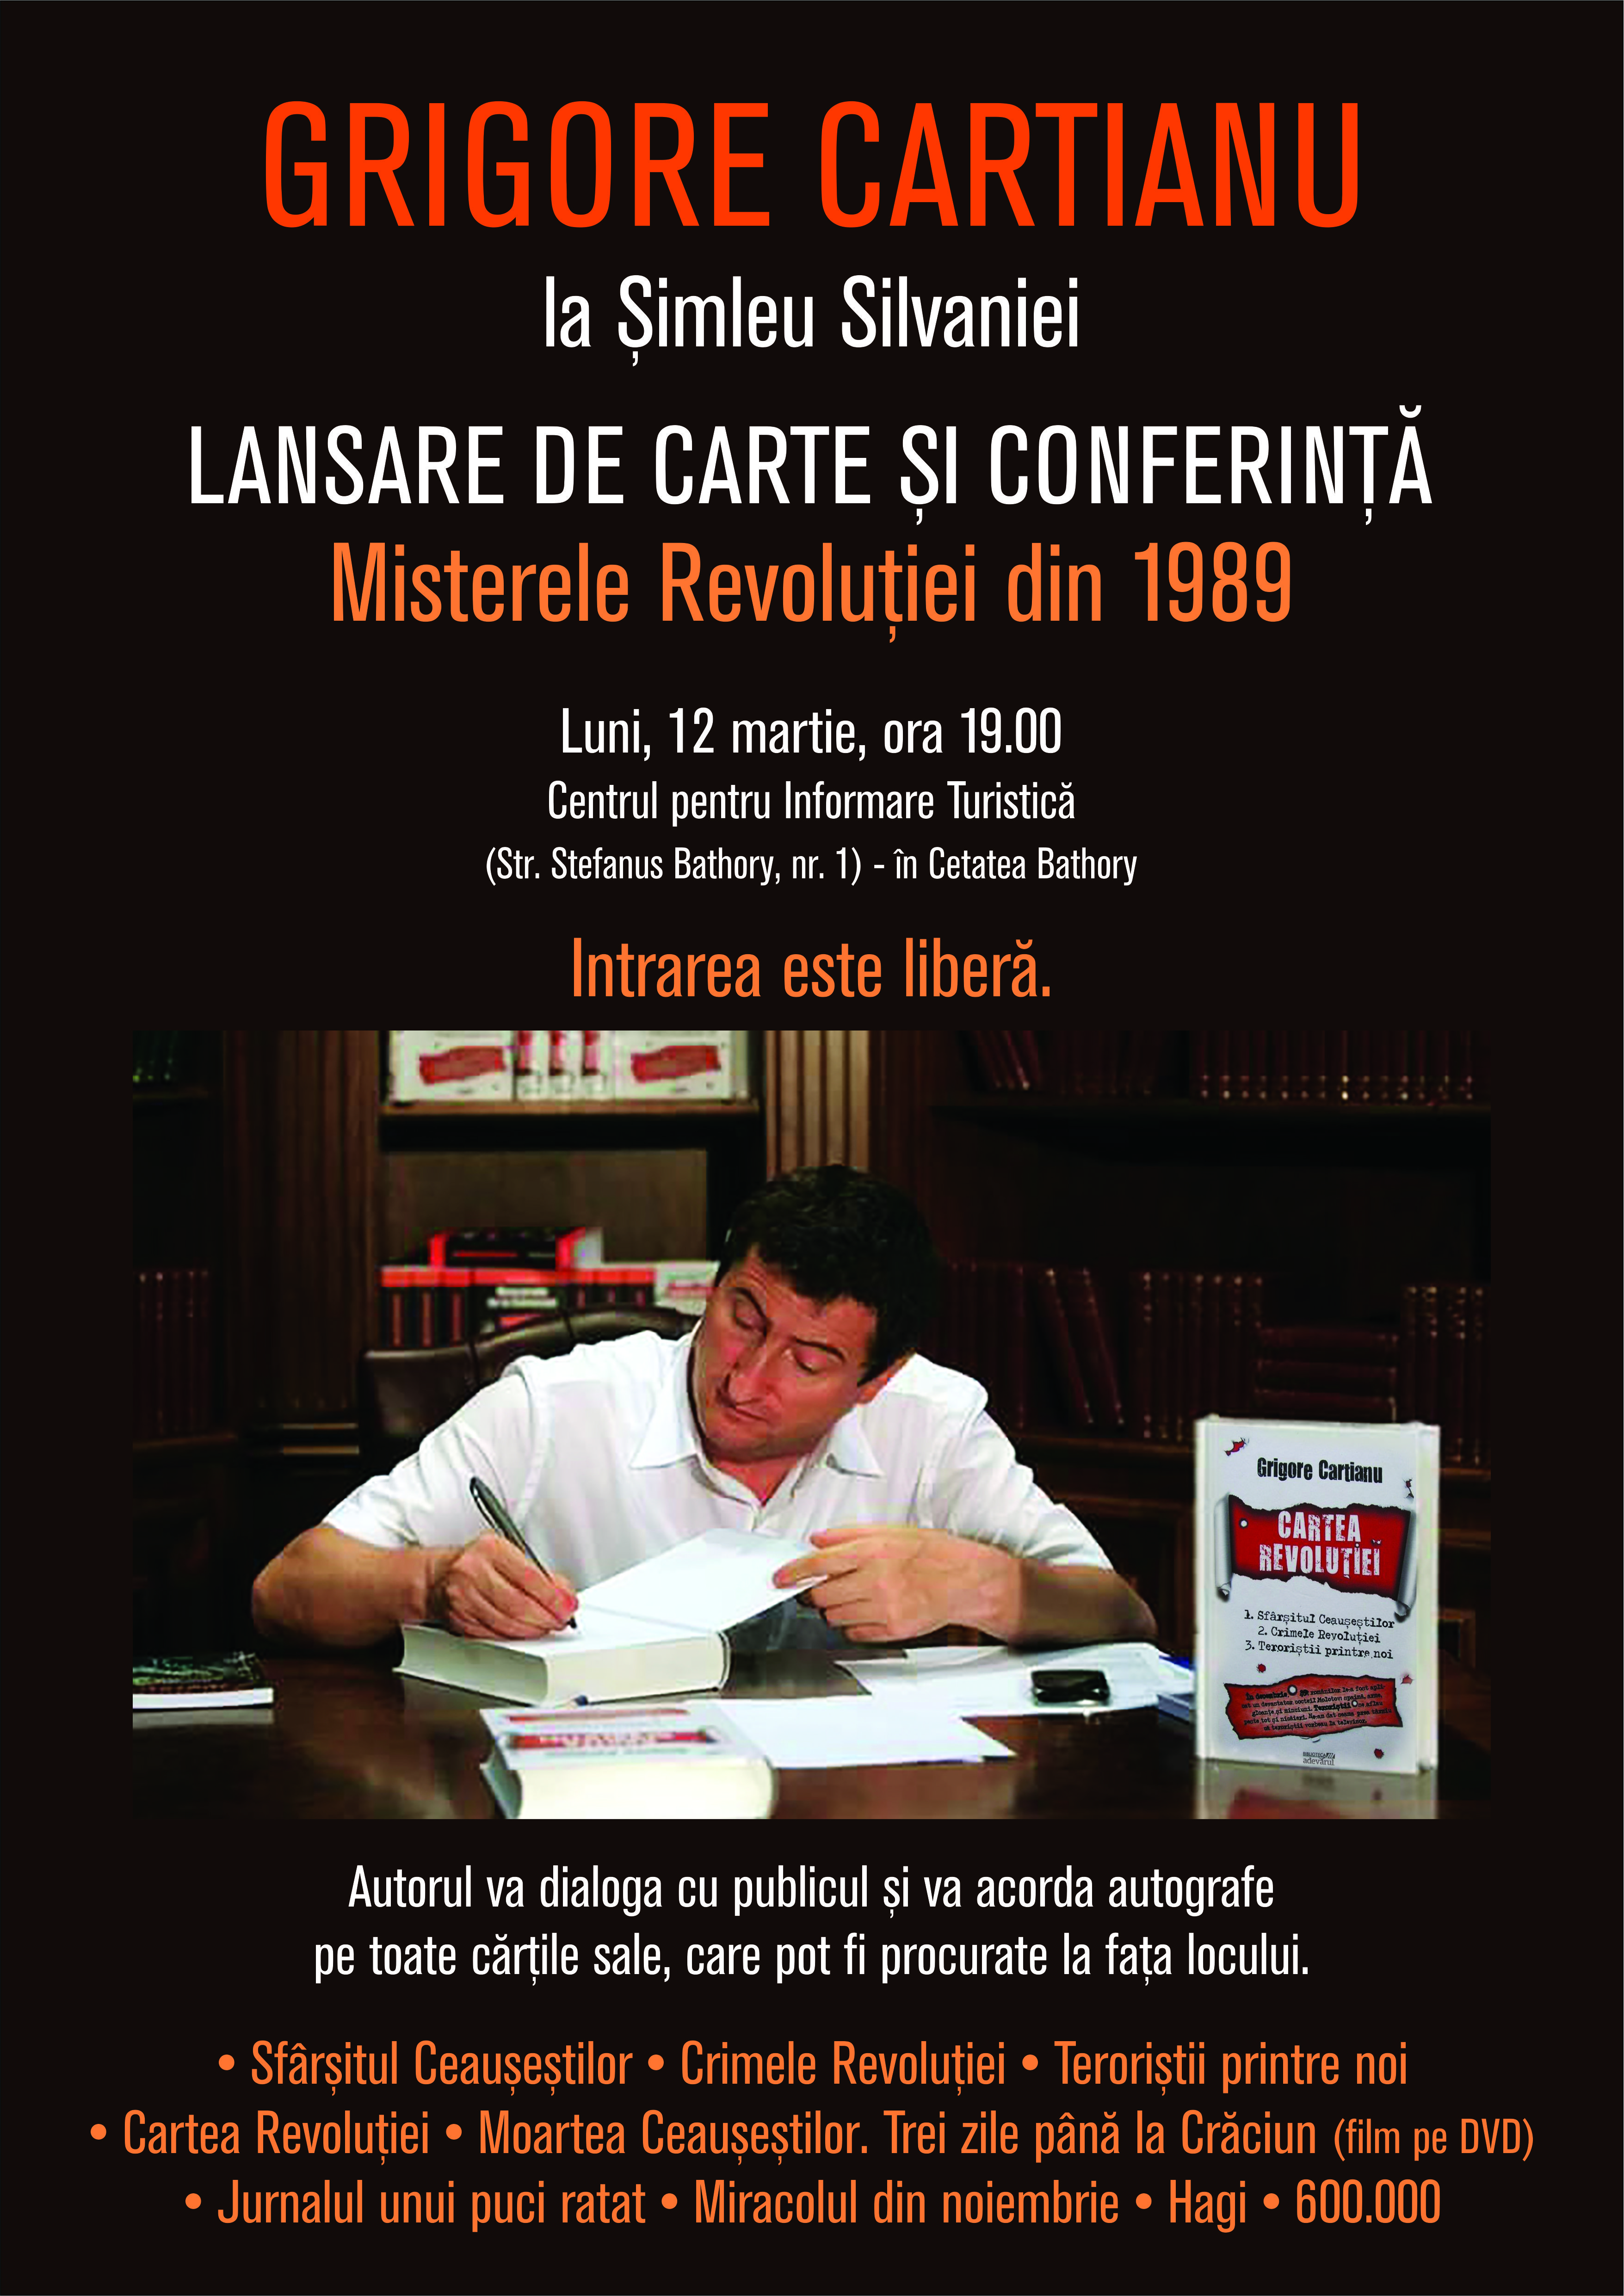 Grigore Cartianu își va lansa cărțile la Șimleu Silvaniei, unde va vorbi despre “Crimele Revoluției Române”